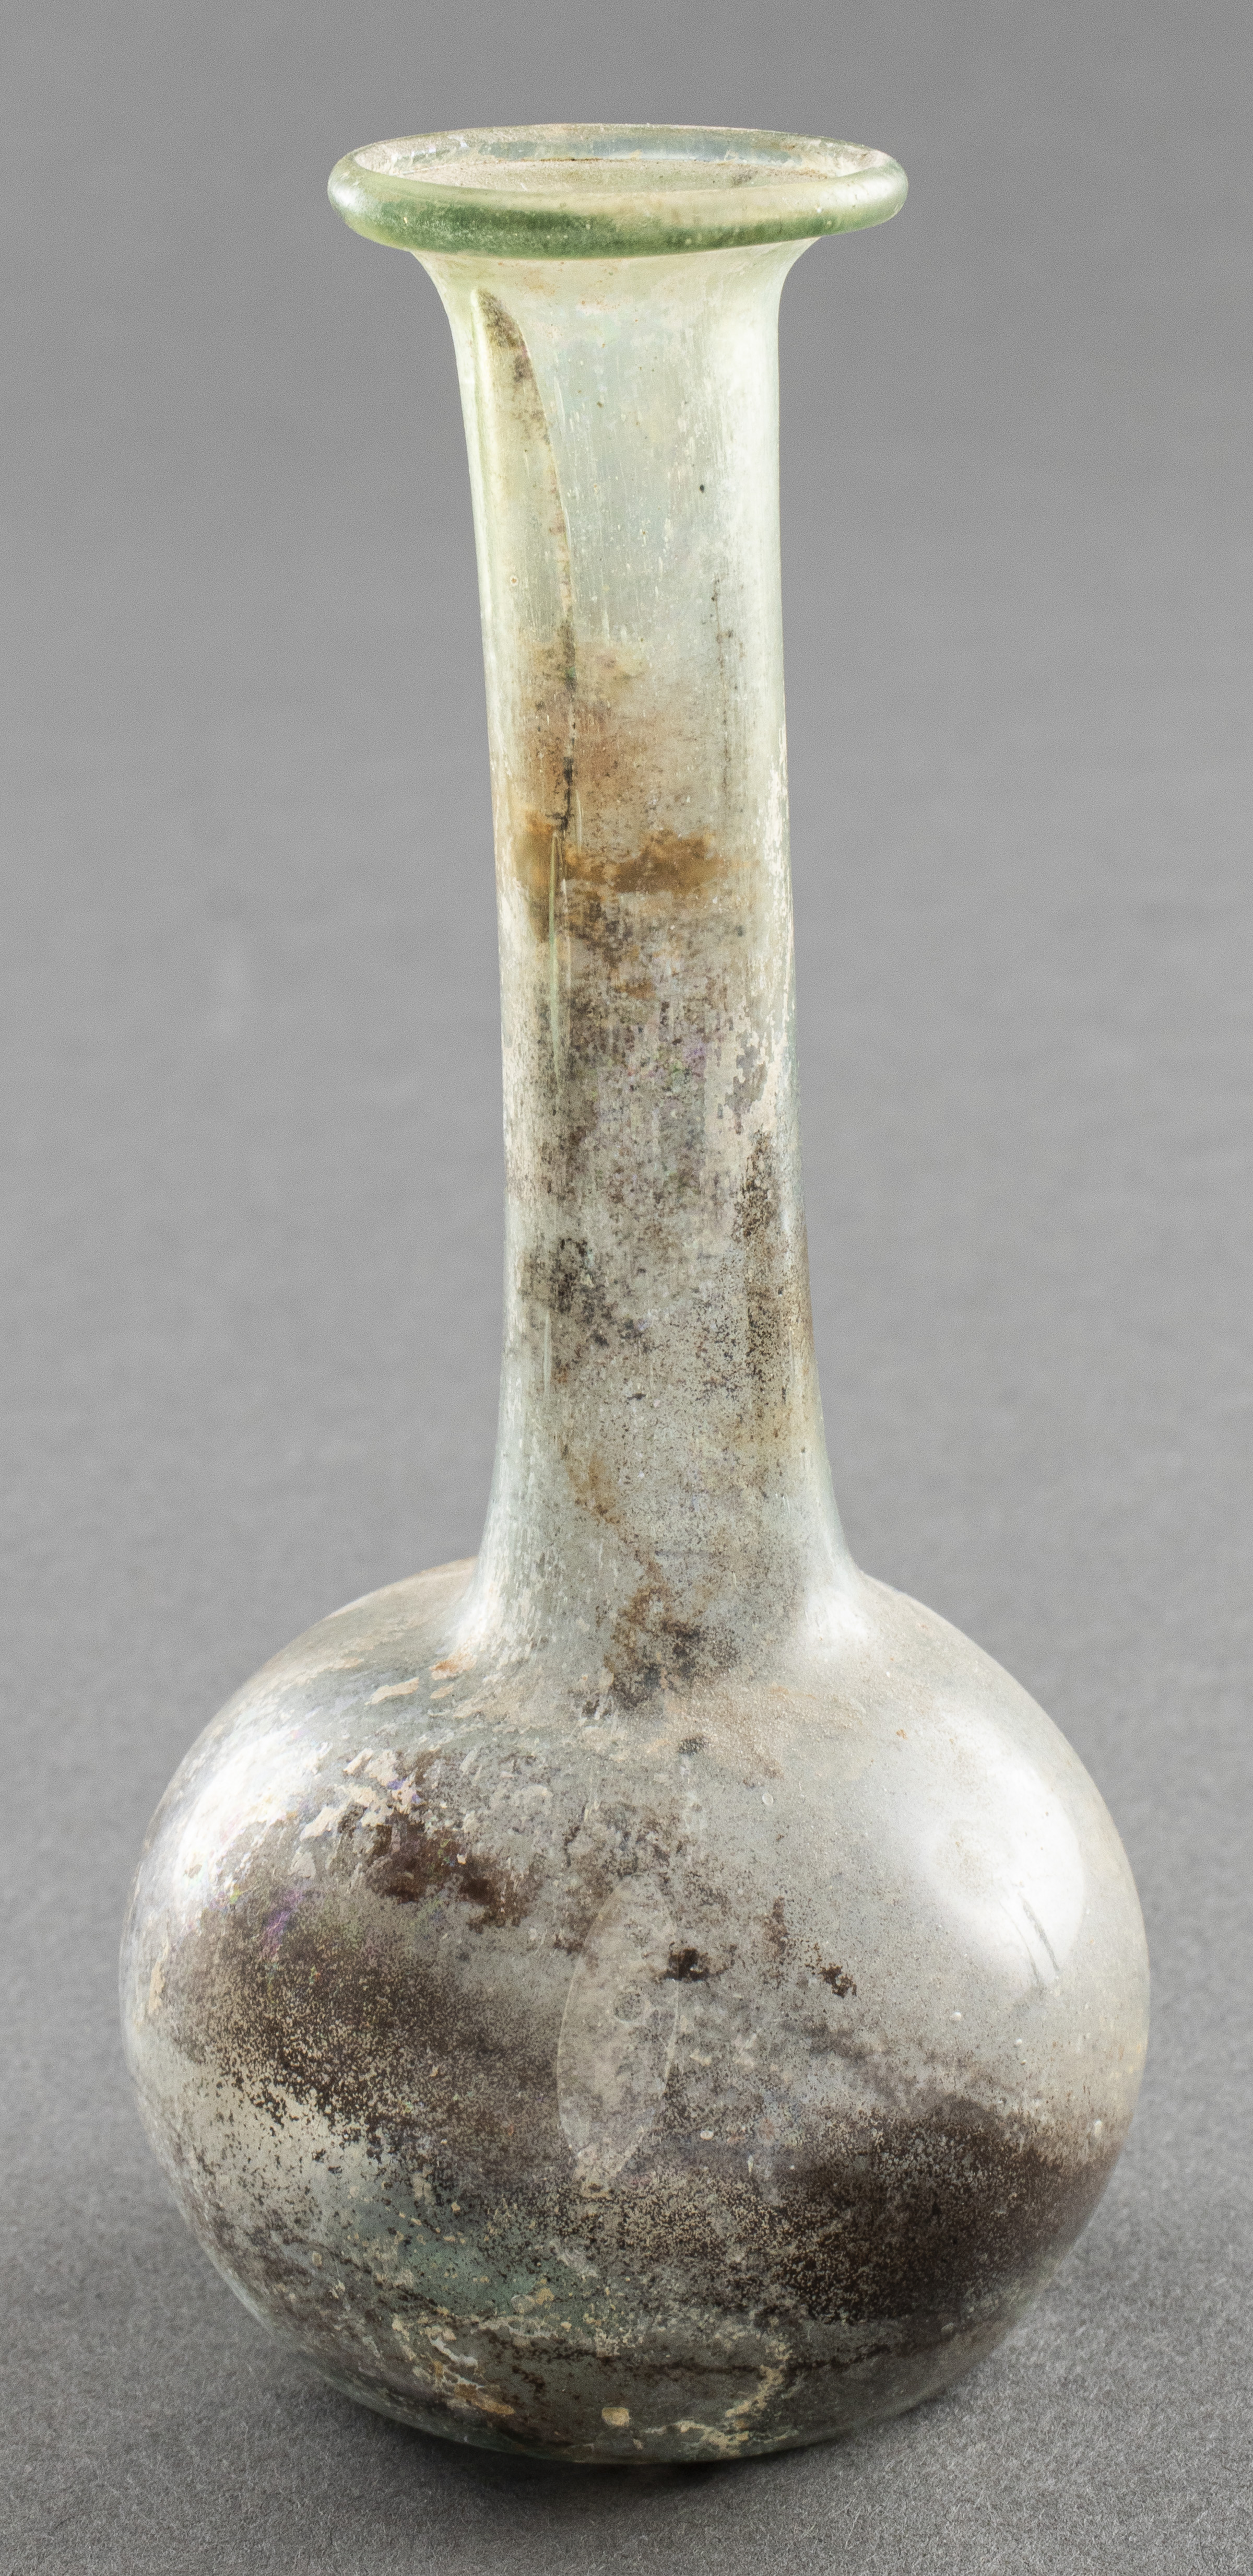 ANCIENT ROMAN GLASS UNGUENT BOTTLE 3c4ac2